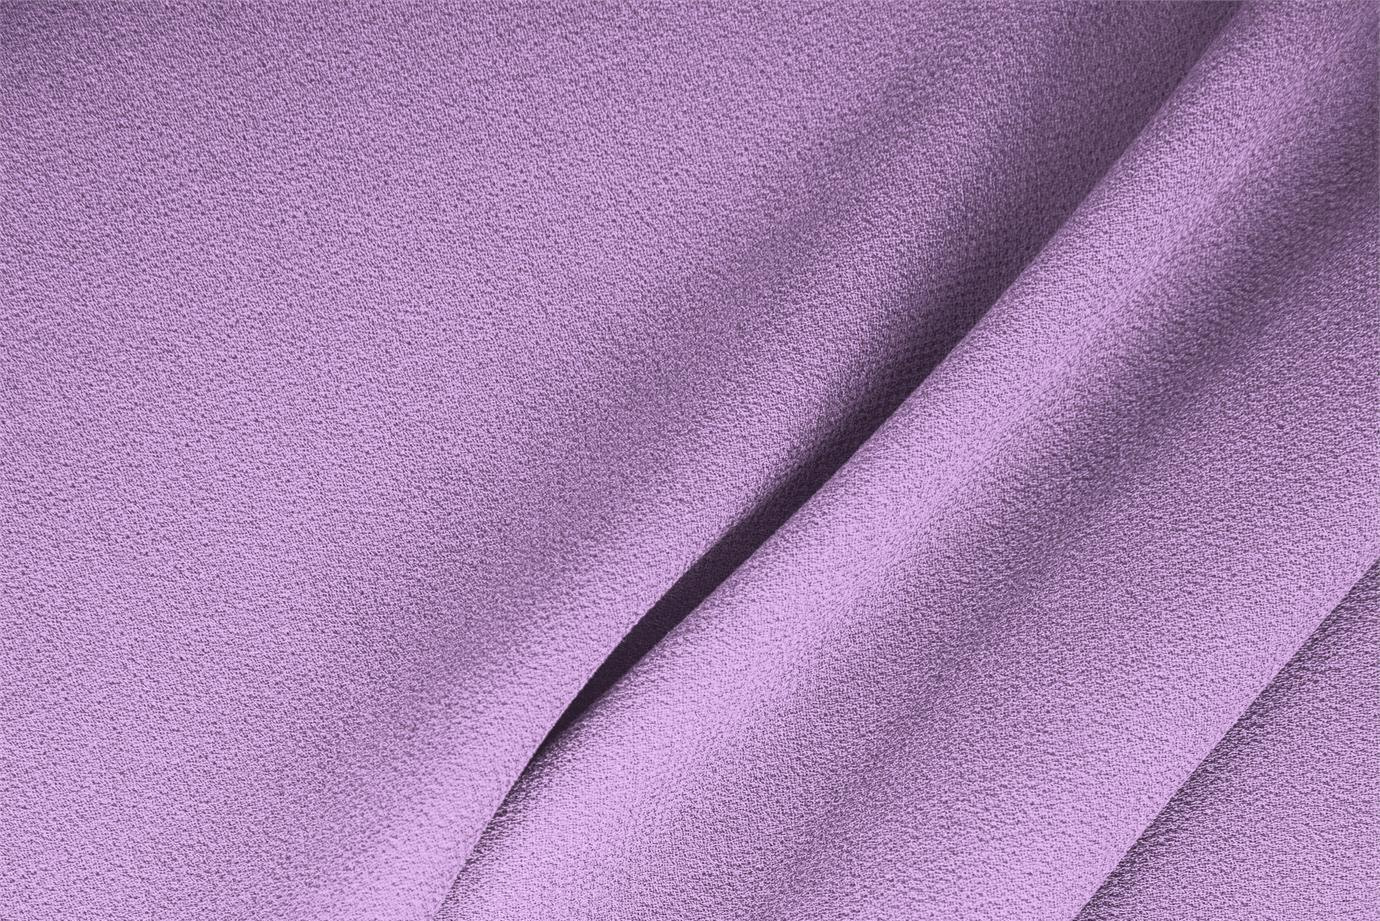 Tissu Double crêpe de laine Violet wisteria en Laine pour vêtements